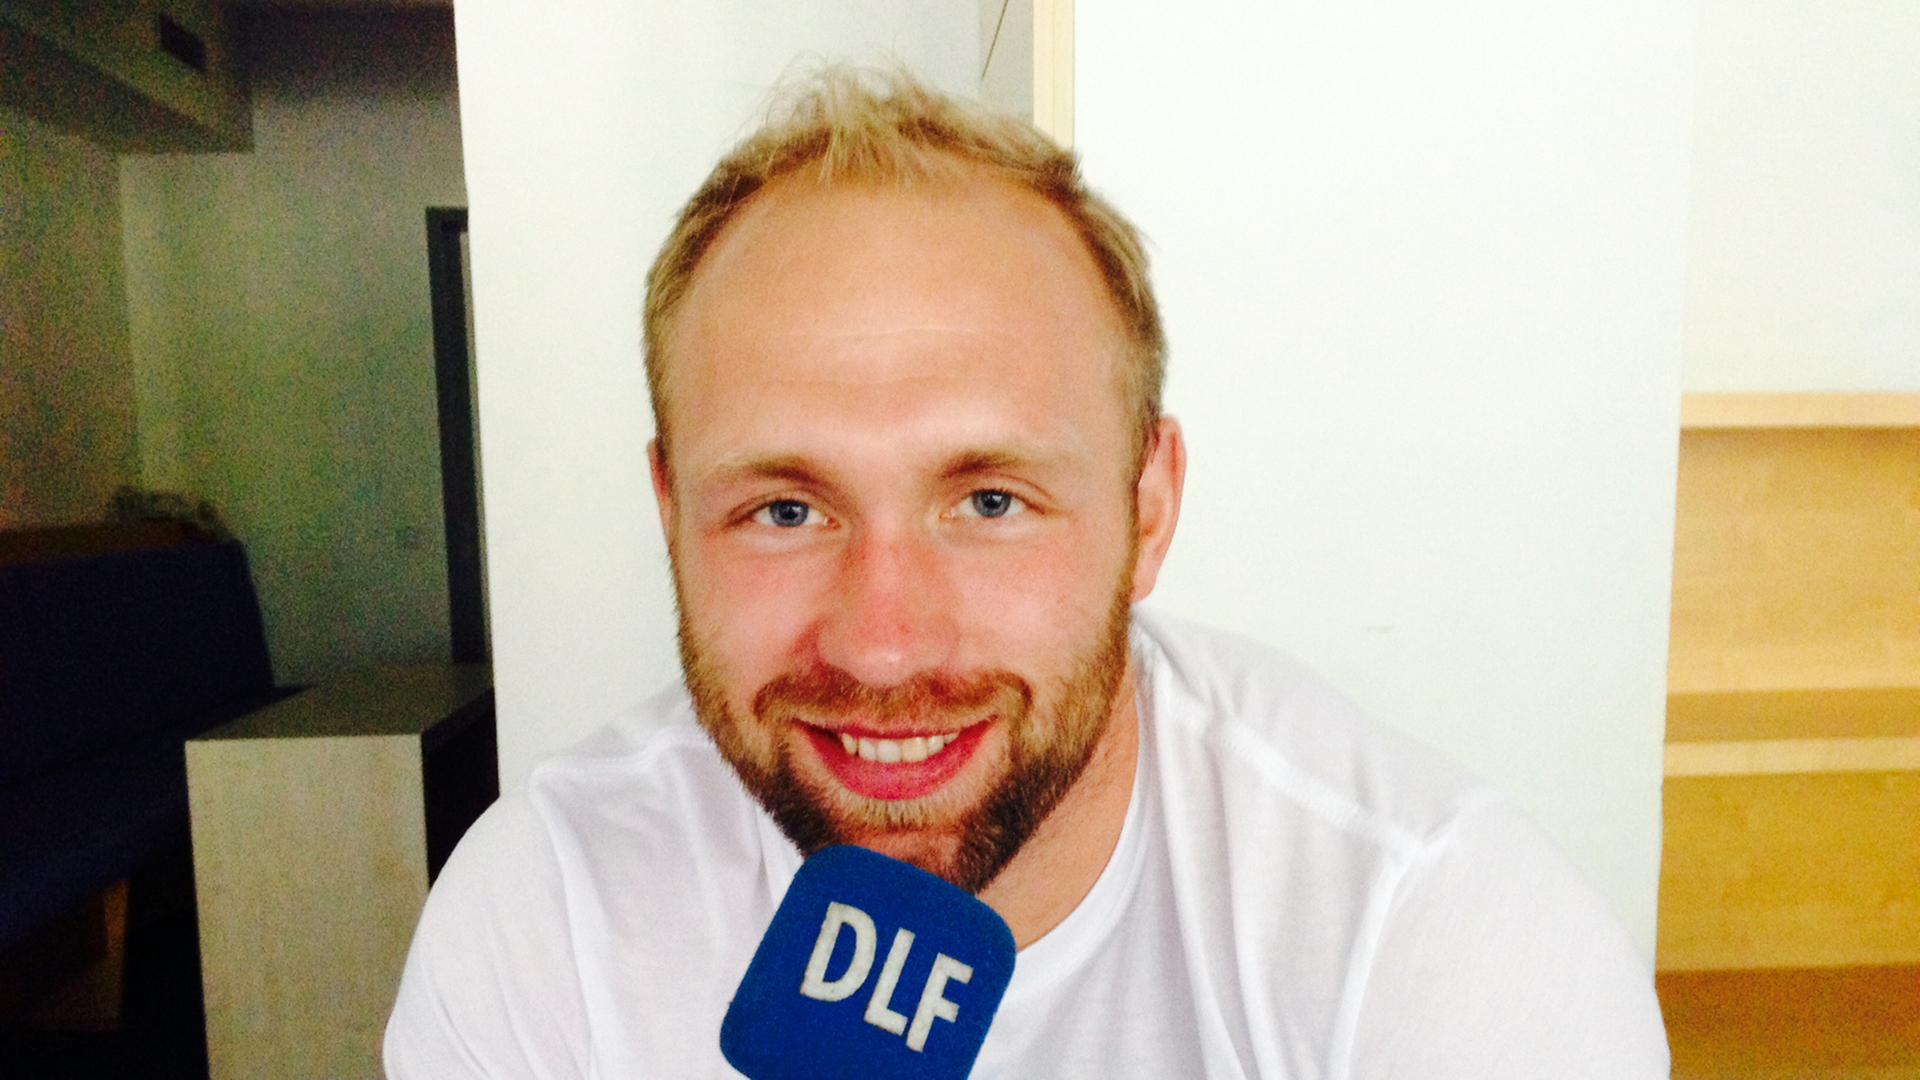 Diskus-Olympia-Sieger Robert Harting hält ein Mikrofon mit der Aufschrift DLF in der Hand.